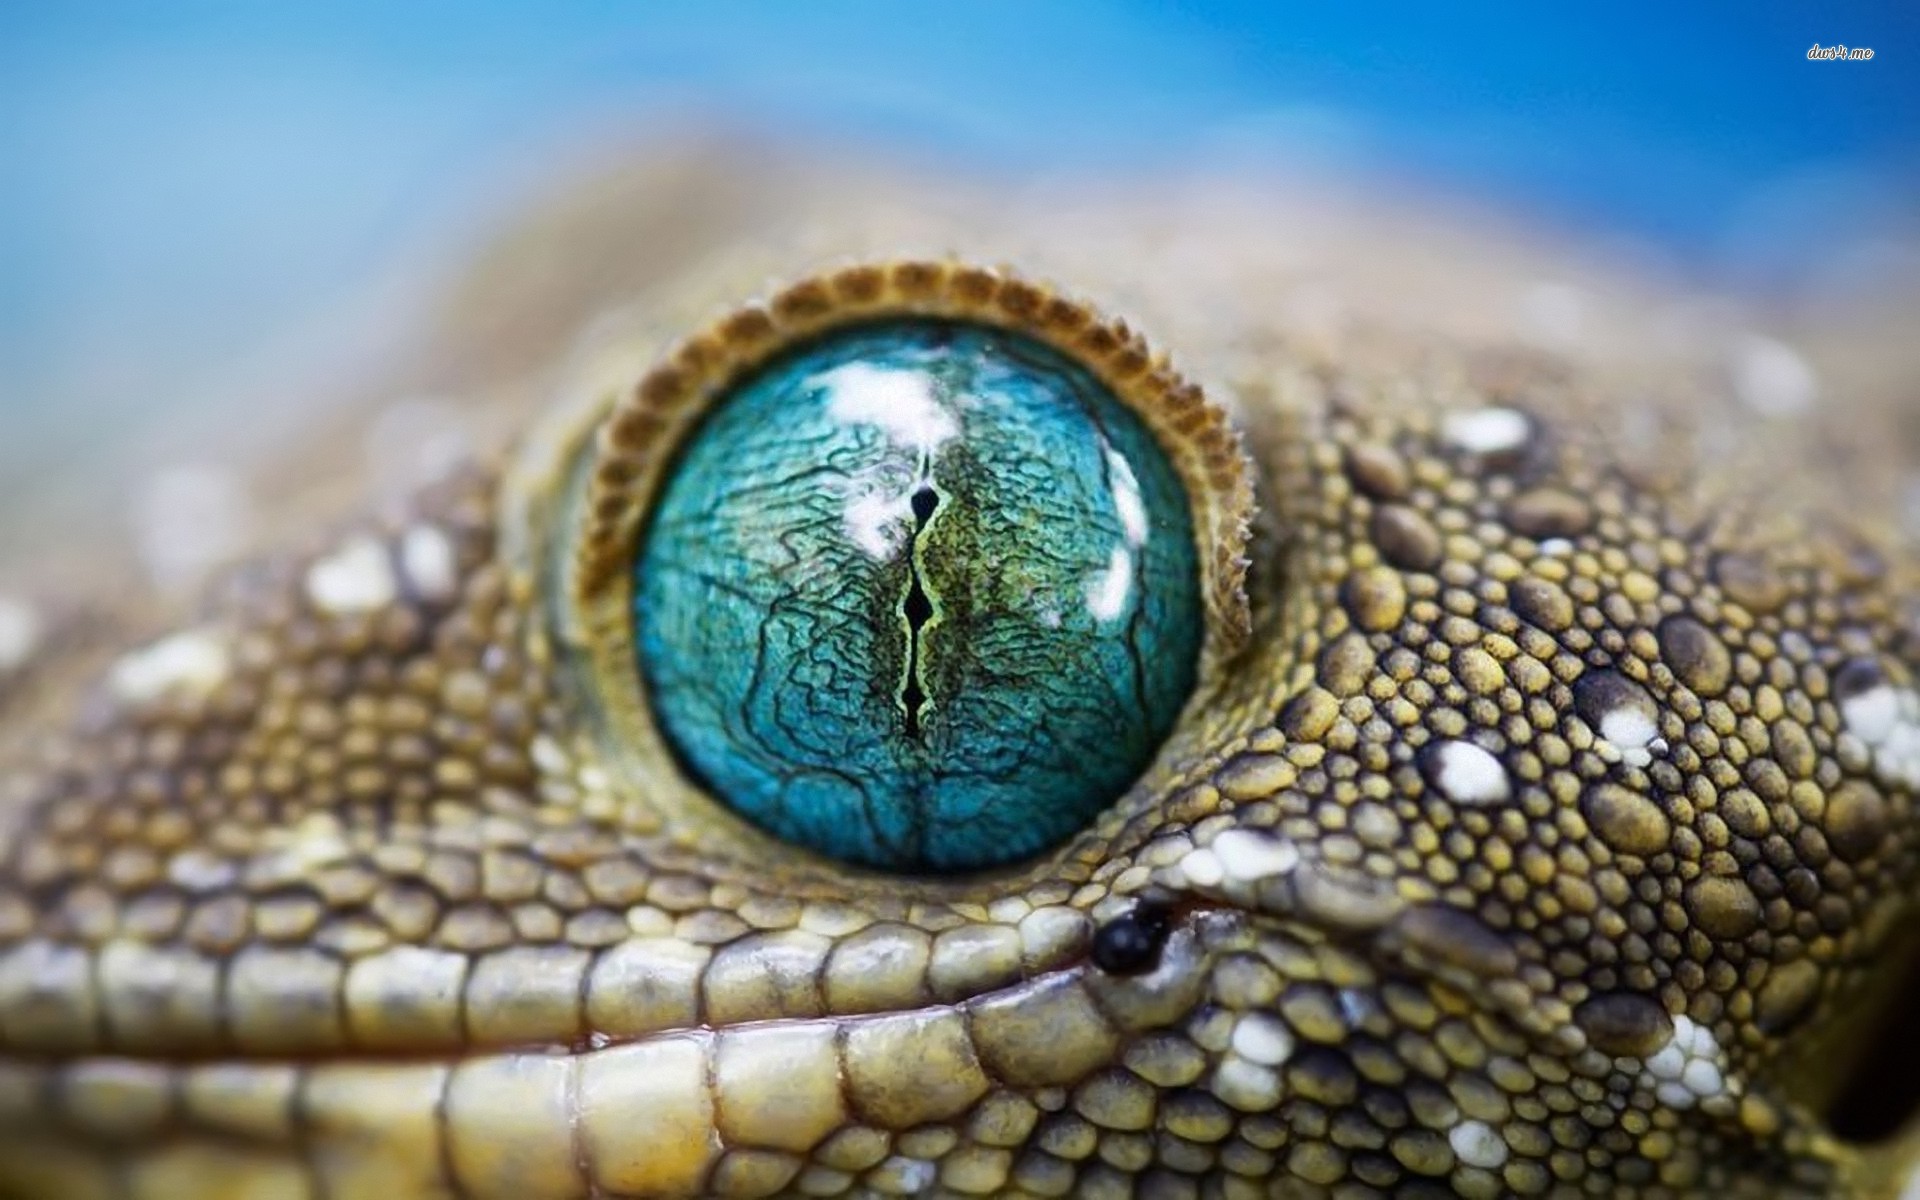 Lizard Eye Close Up - HD Wallpaper 